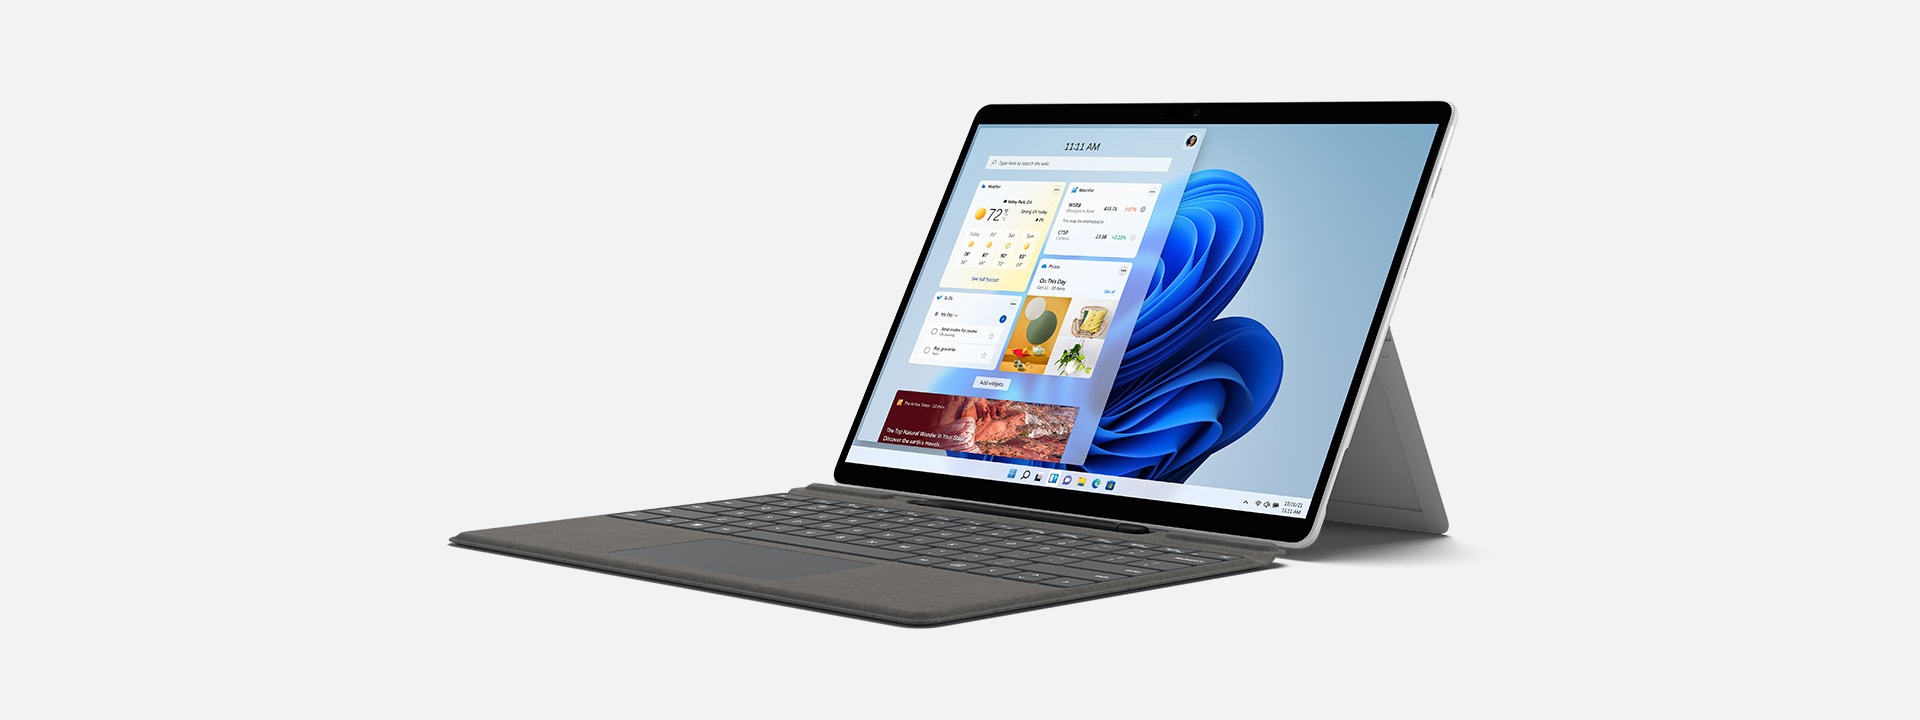 جهاز Surface Pro X معروض ككمبيوتر محمول مع شاشة Windows 11 الرئيسية.